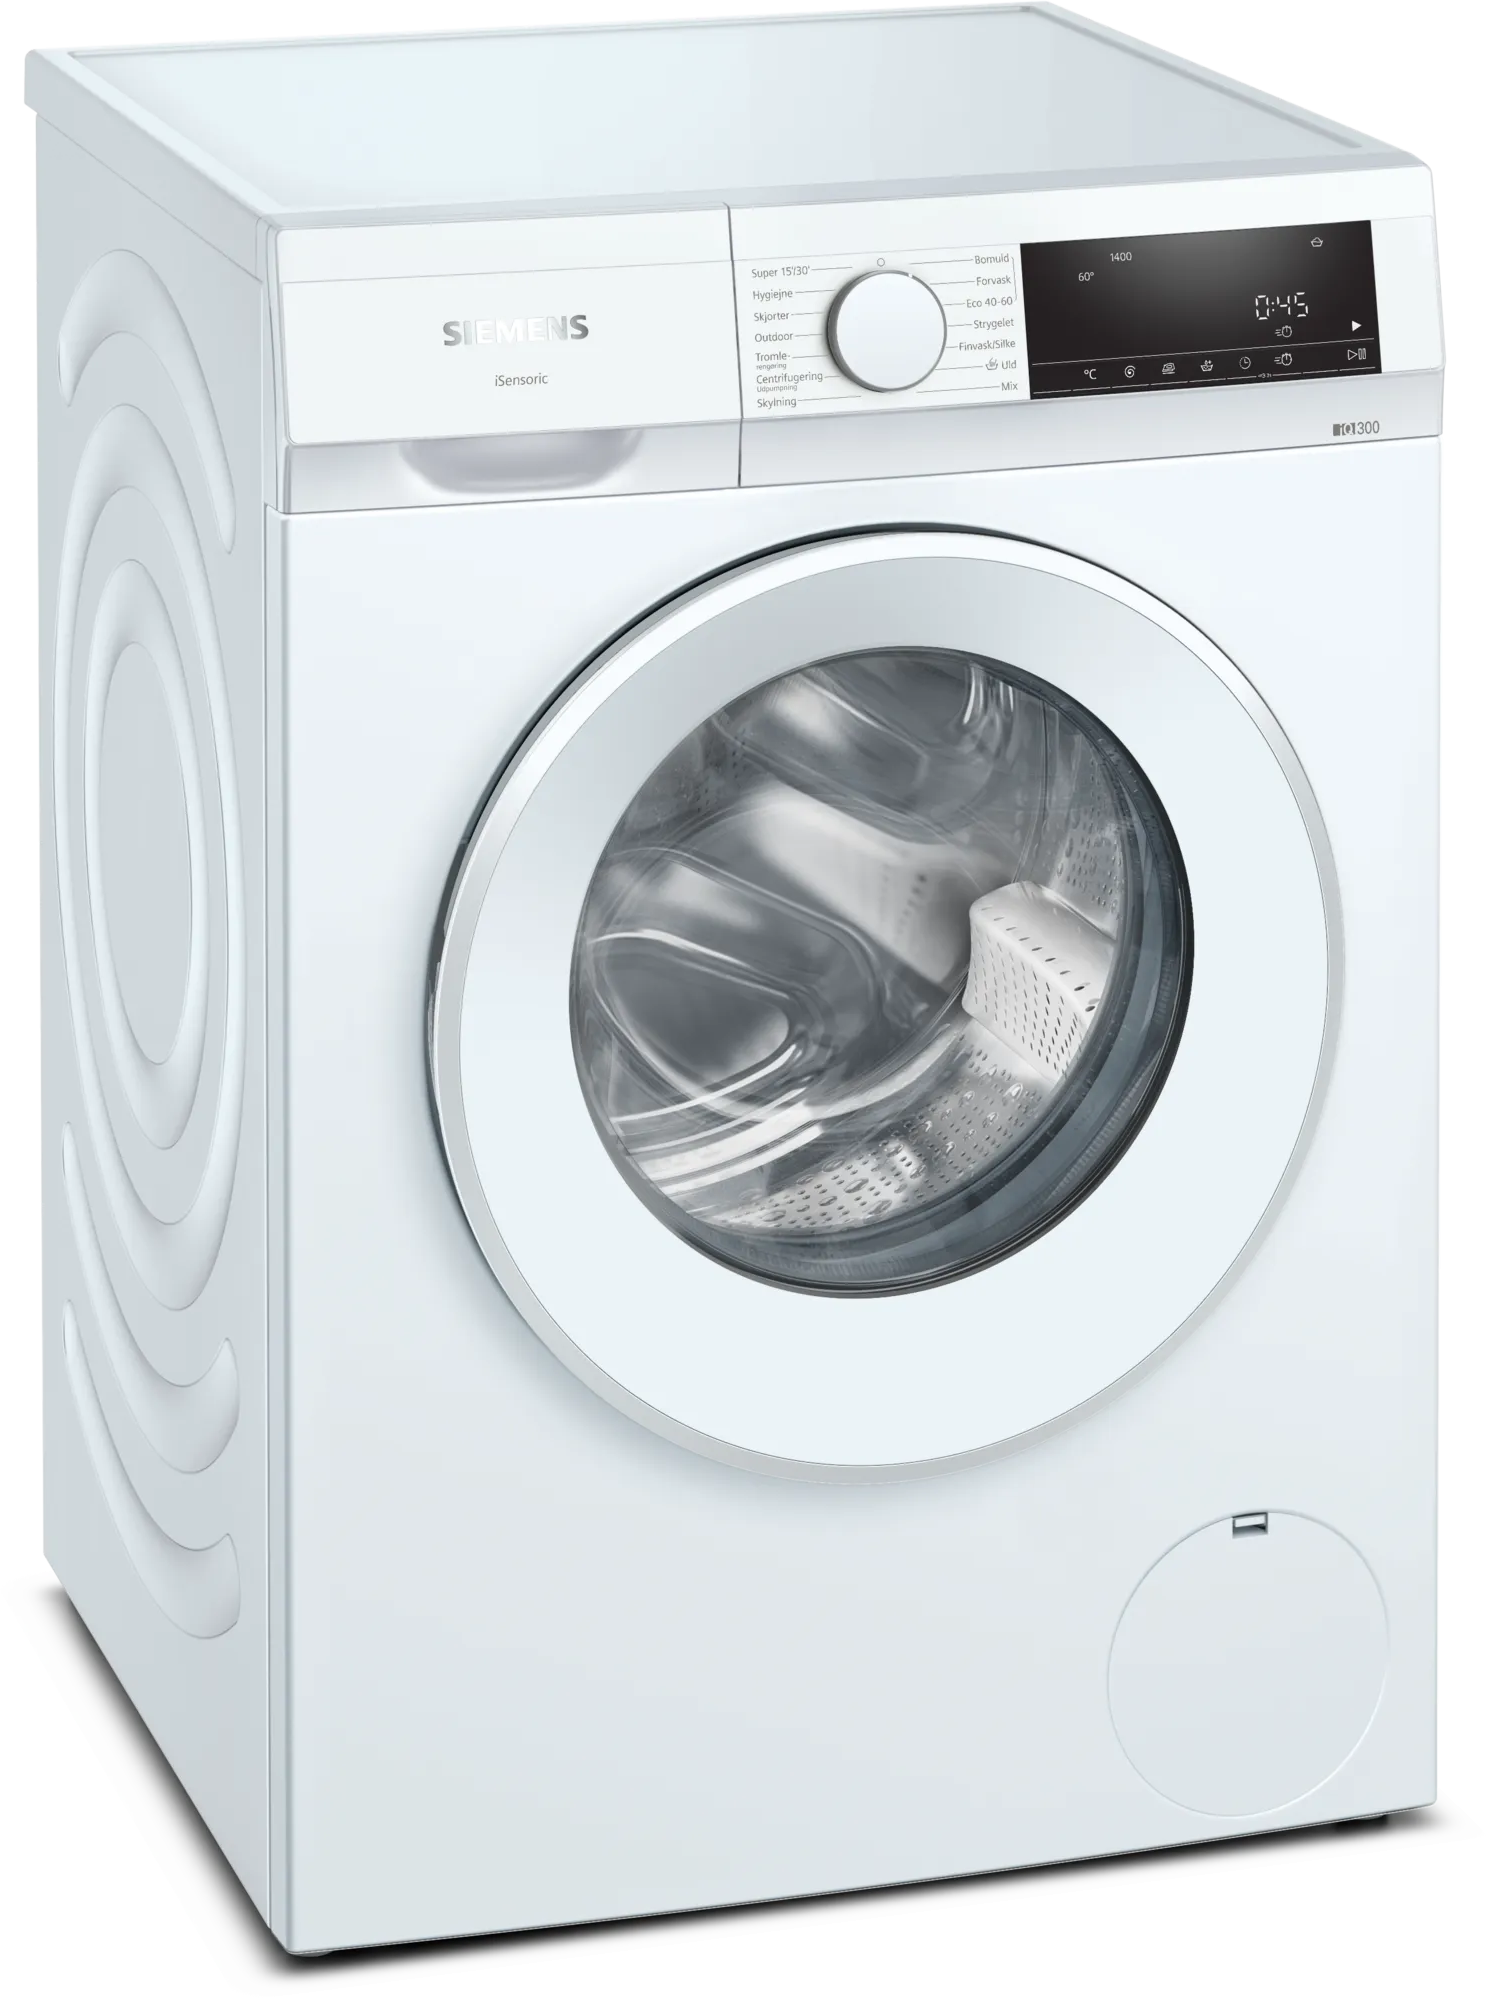 4242003914489 Siemens WG44G00ADN - Frontbetjent vaskemaskine Hvidevarer,Vaskemaskine,Frontbetjente vaskemaskiner 11400006860 WG44G00ADN